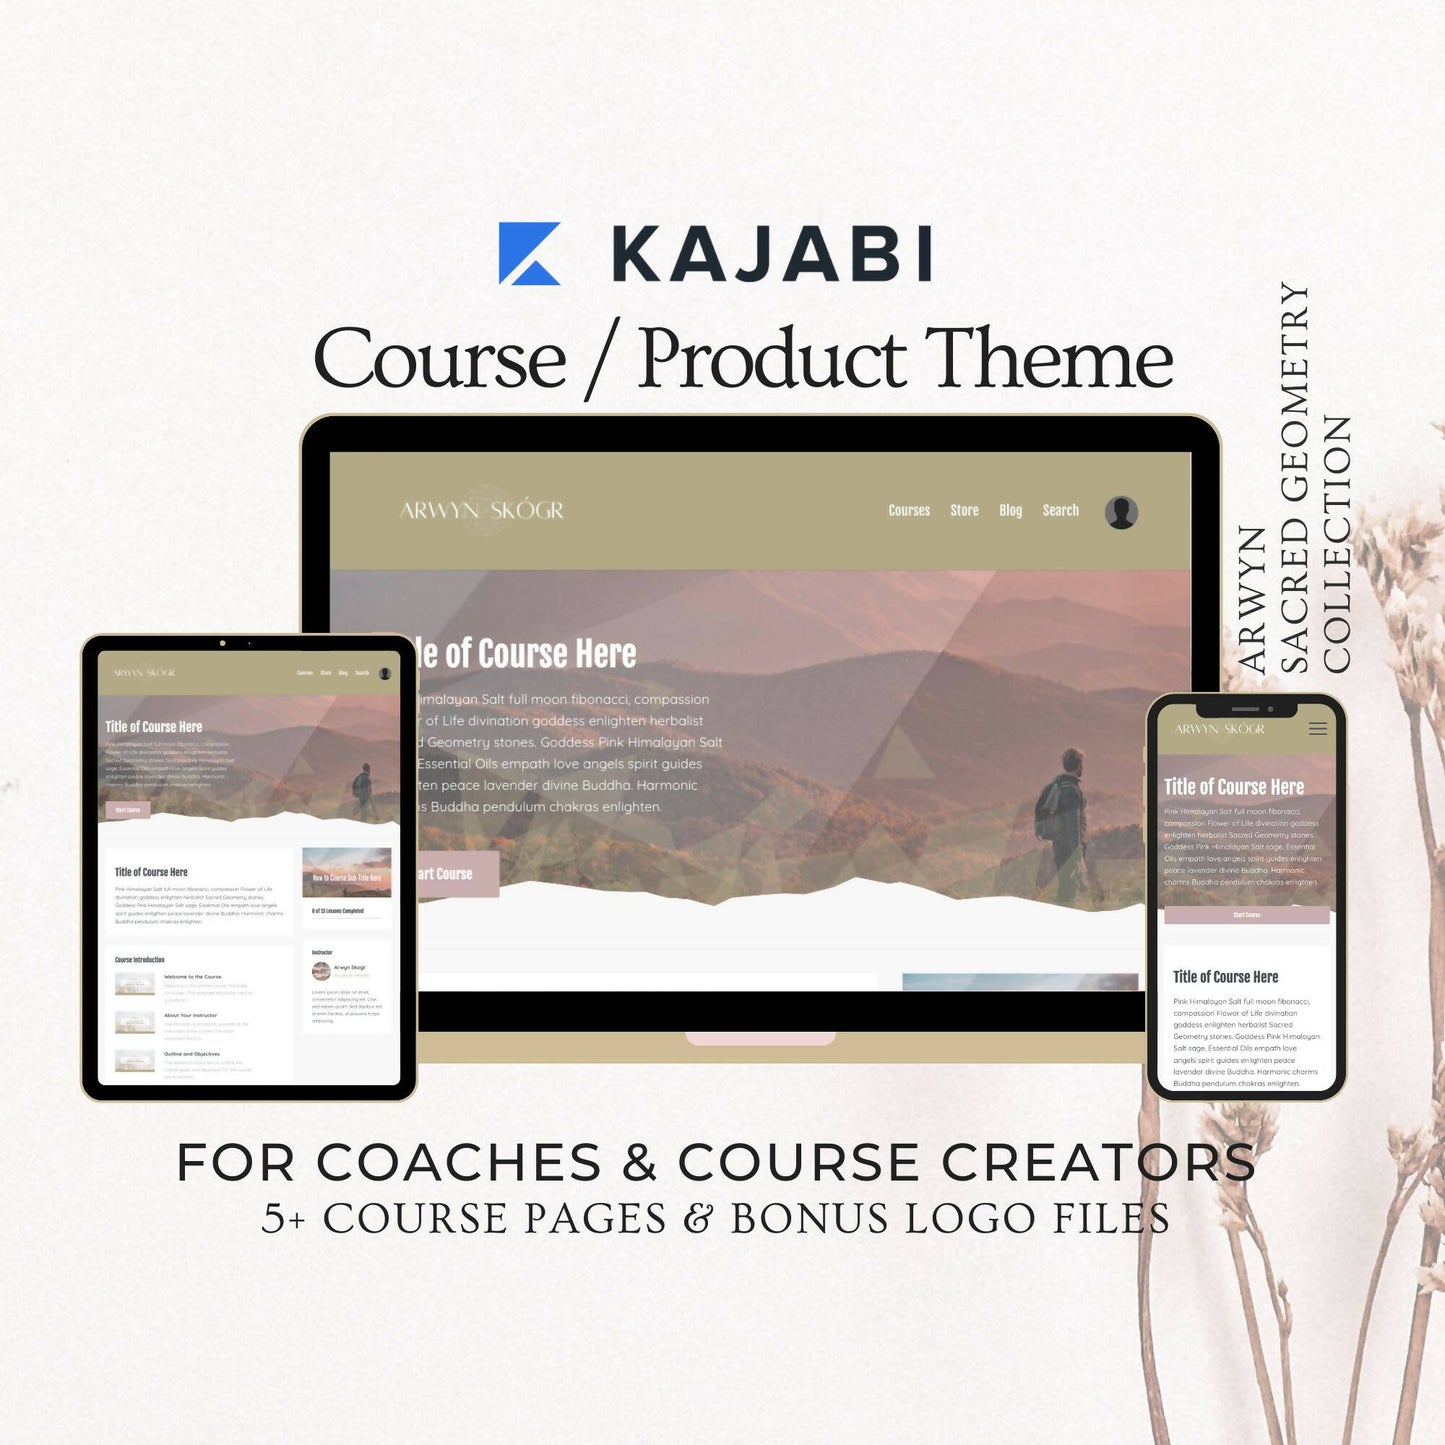 kajabi-course-theme-coach-course-creator01 (1)